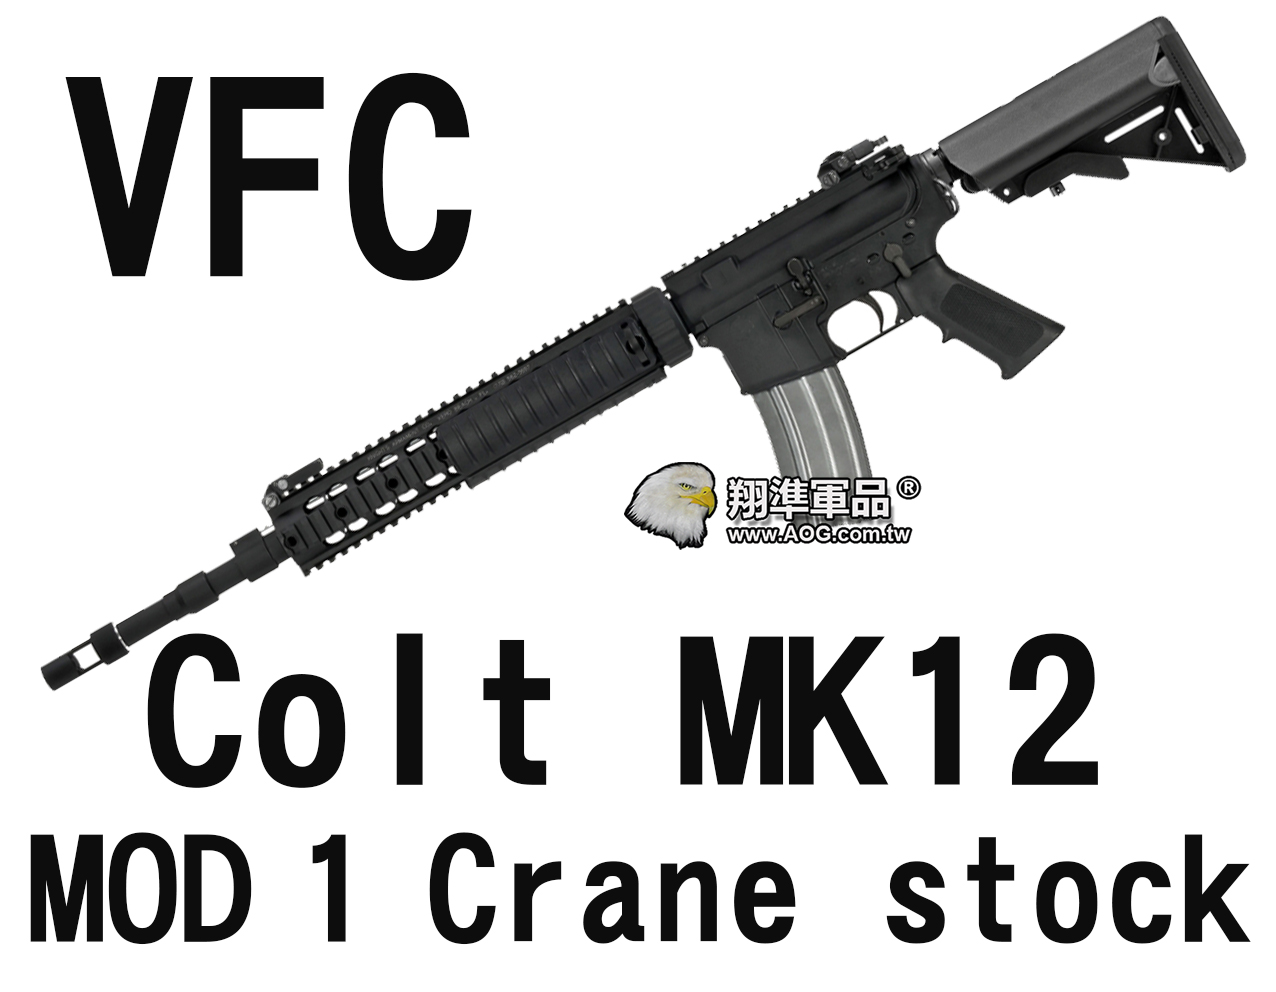 【翔準軍品AOG】【VFC】Colt MK12 MOD 1 Crane stock (STD) 海豹托 魚骨版 電動槍 黑色 VF1-LMK12M1A-BK01